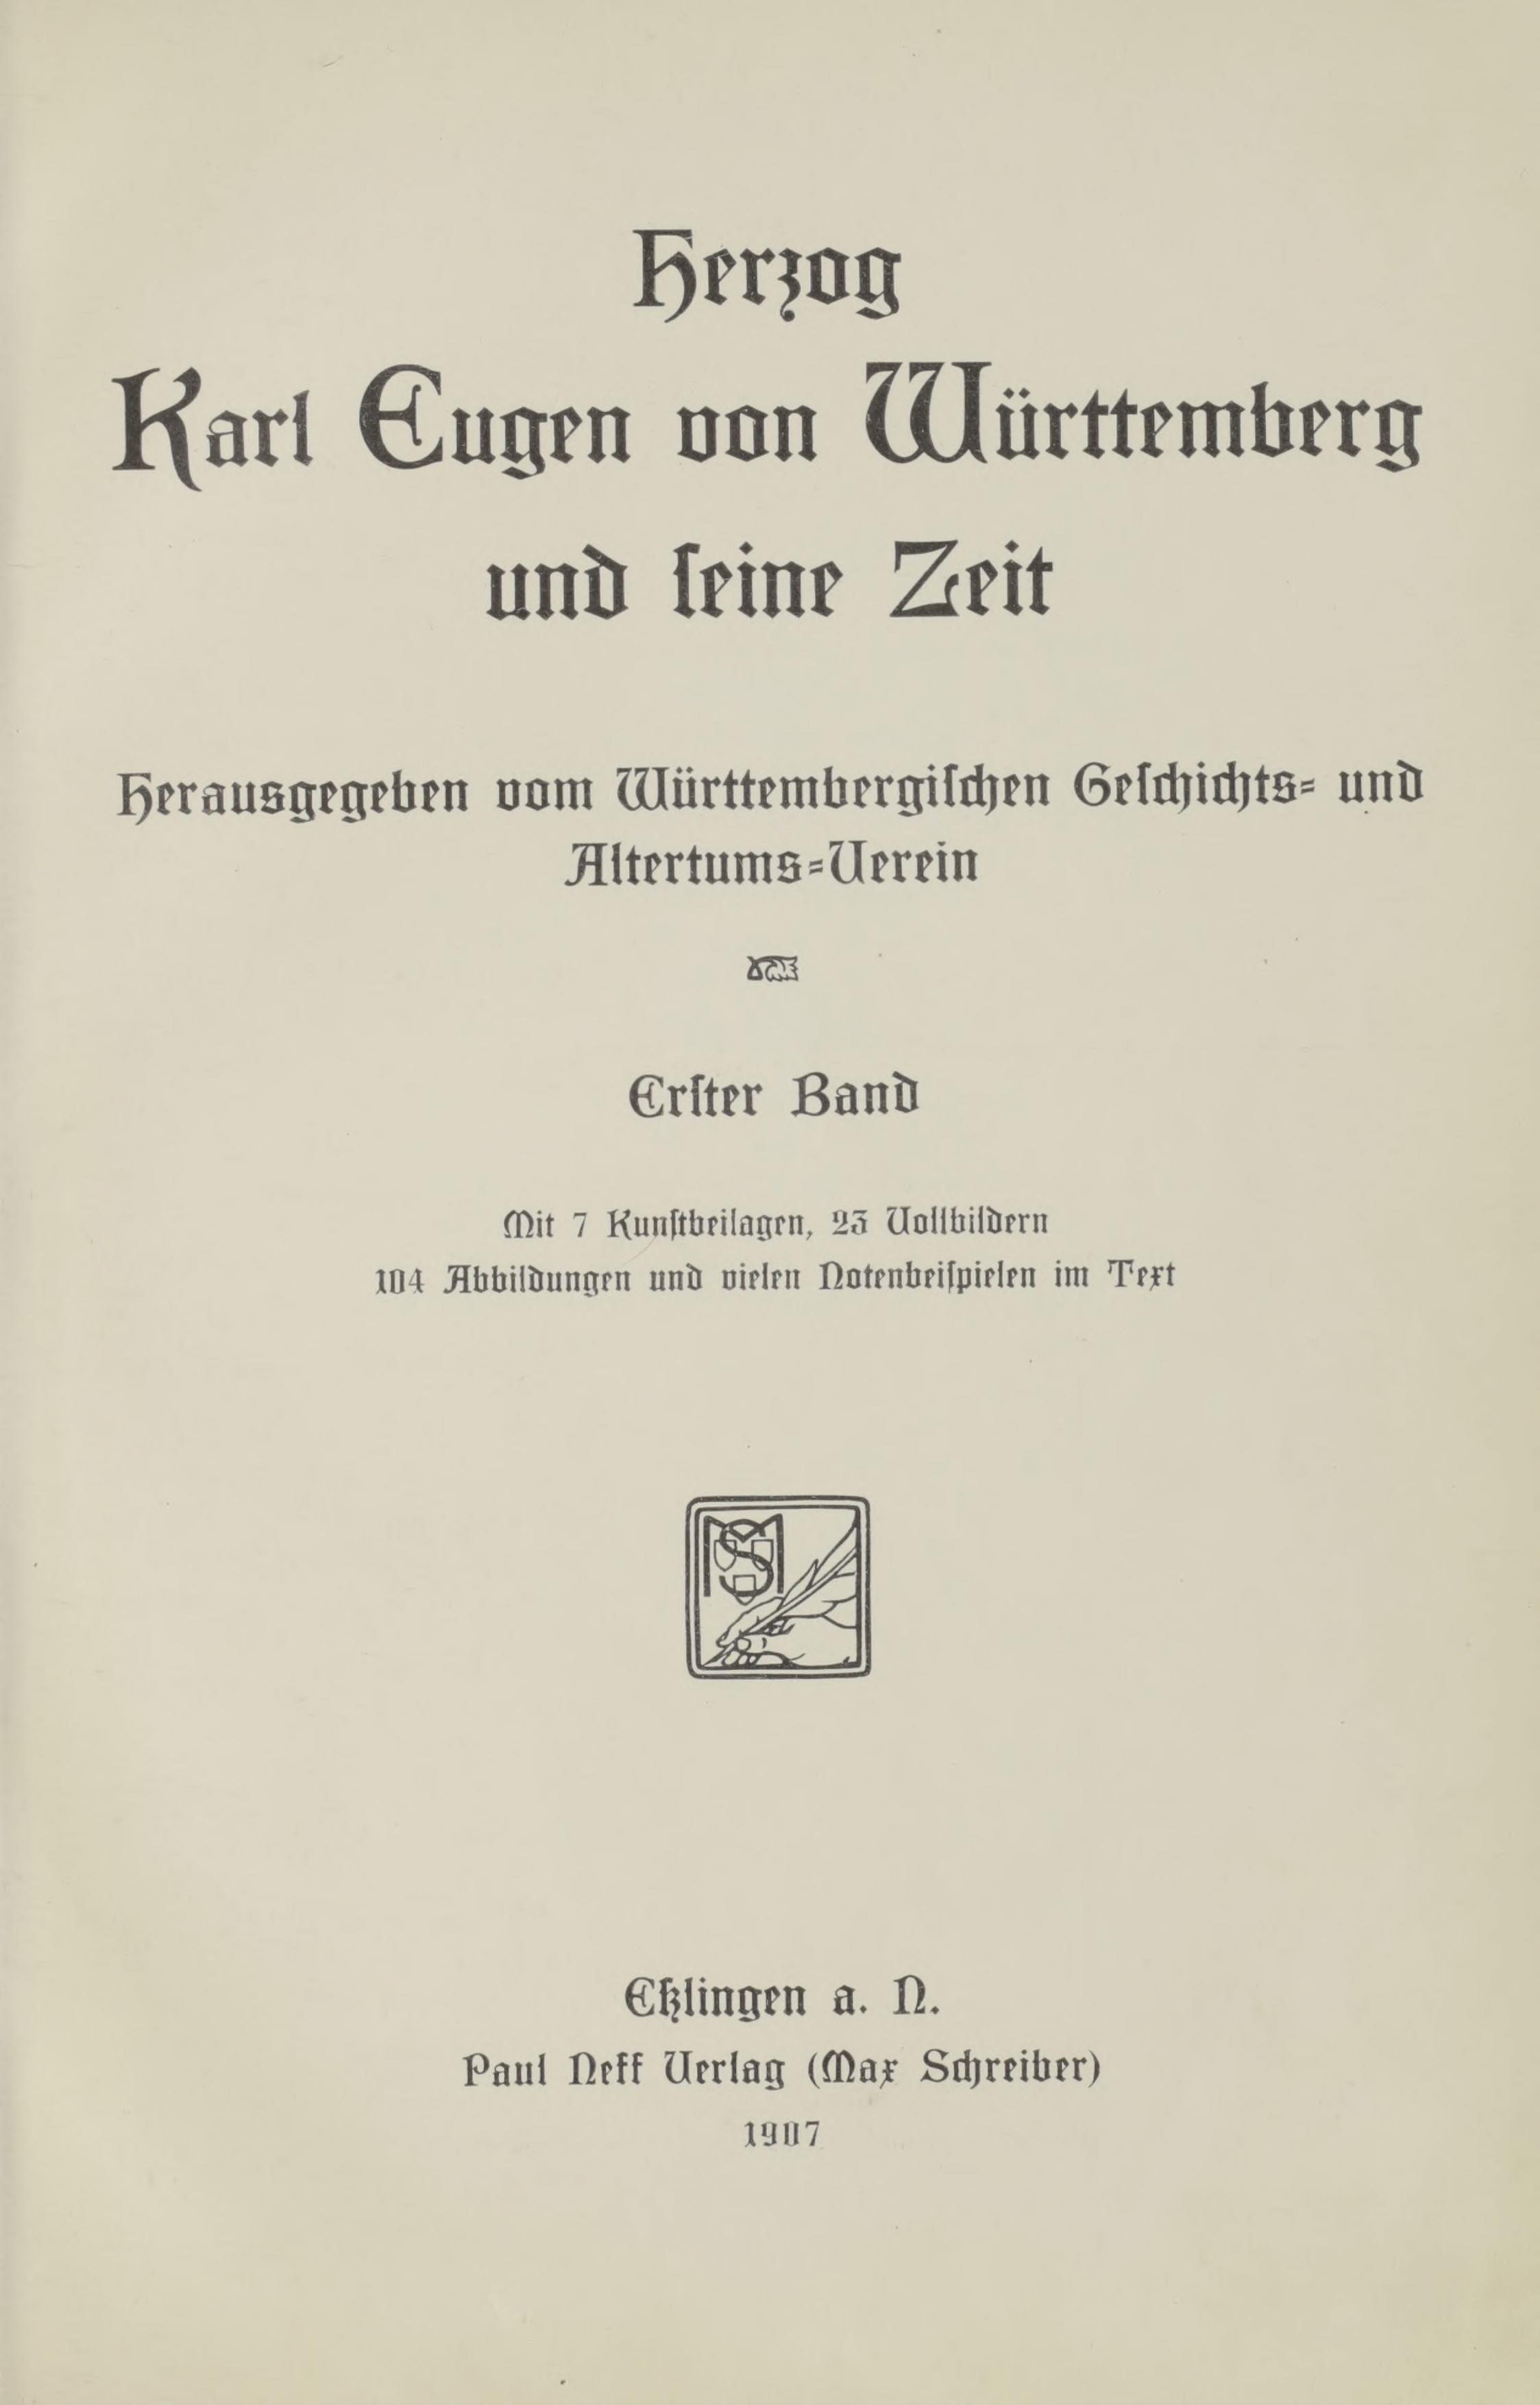 Karl Eugen und seine Zeit Cover